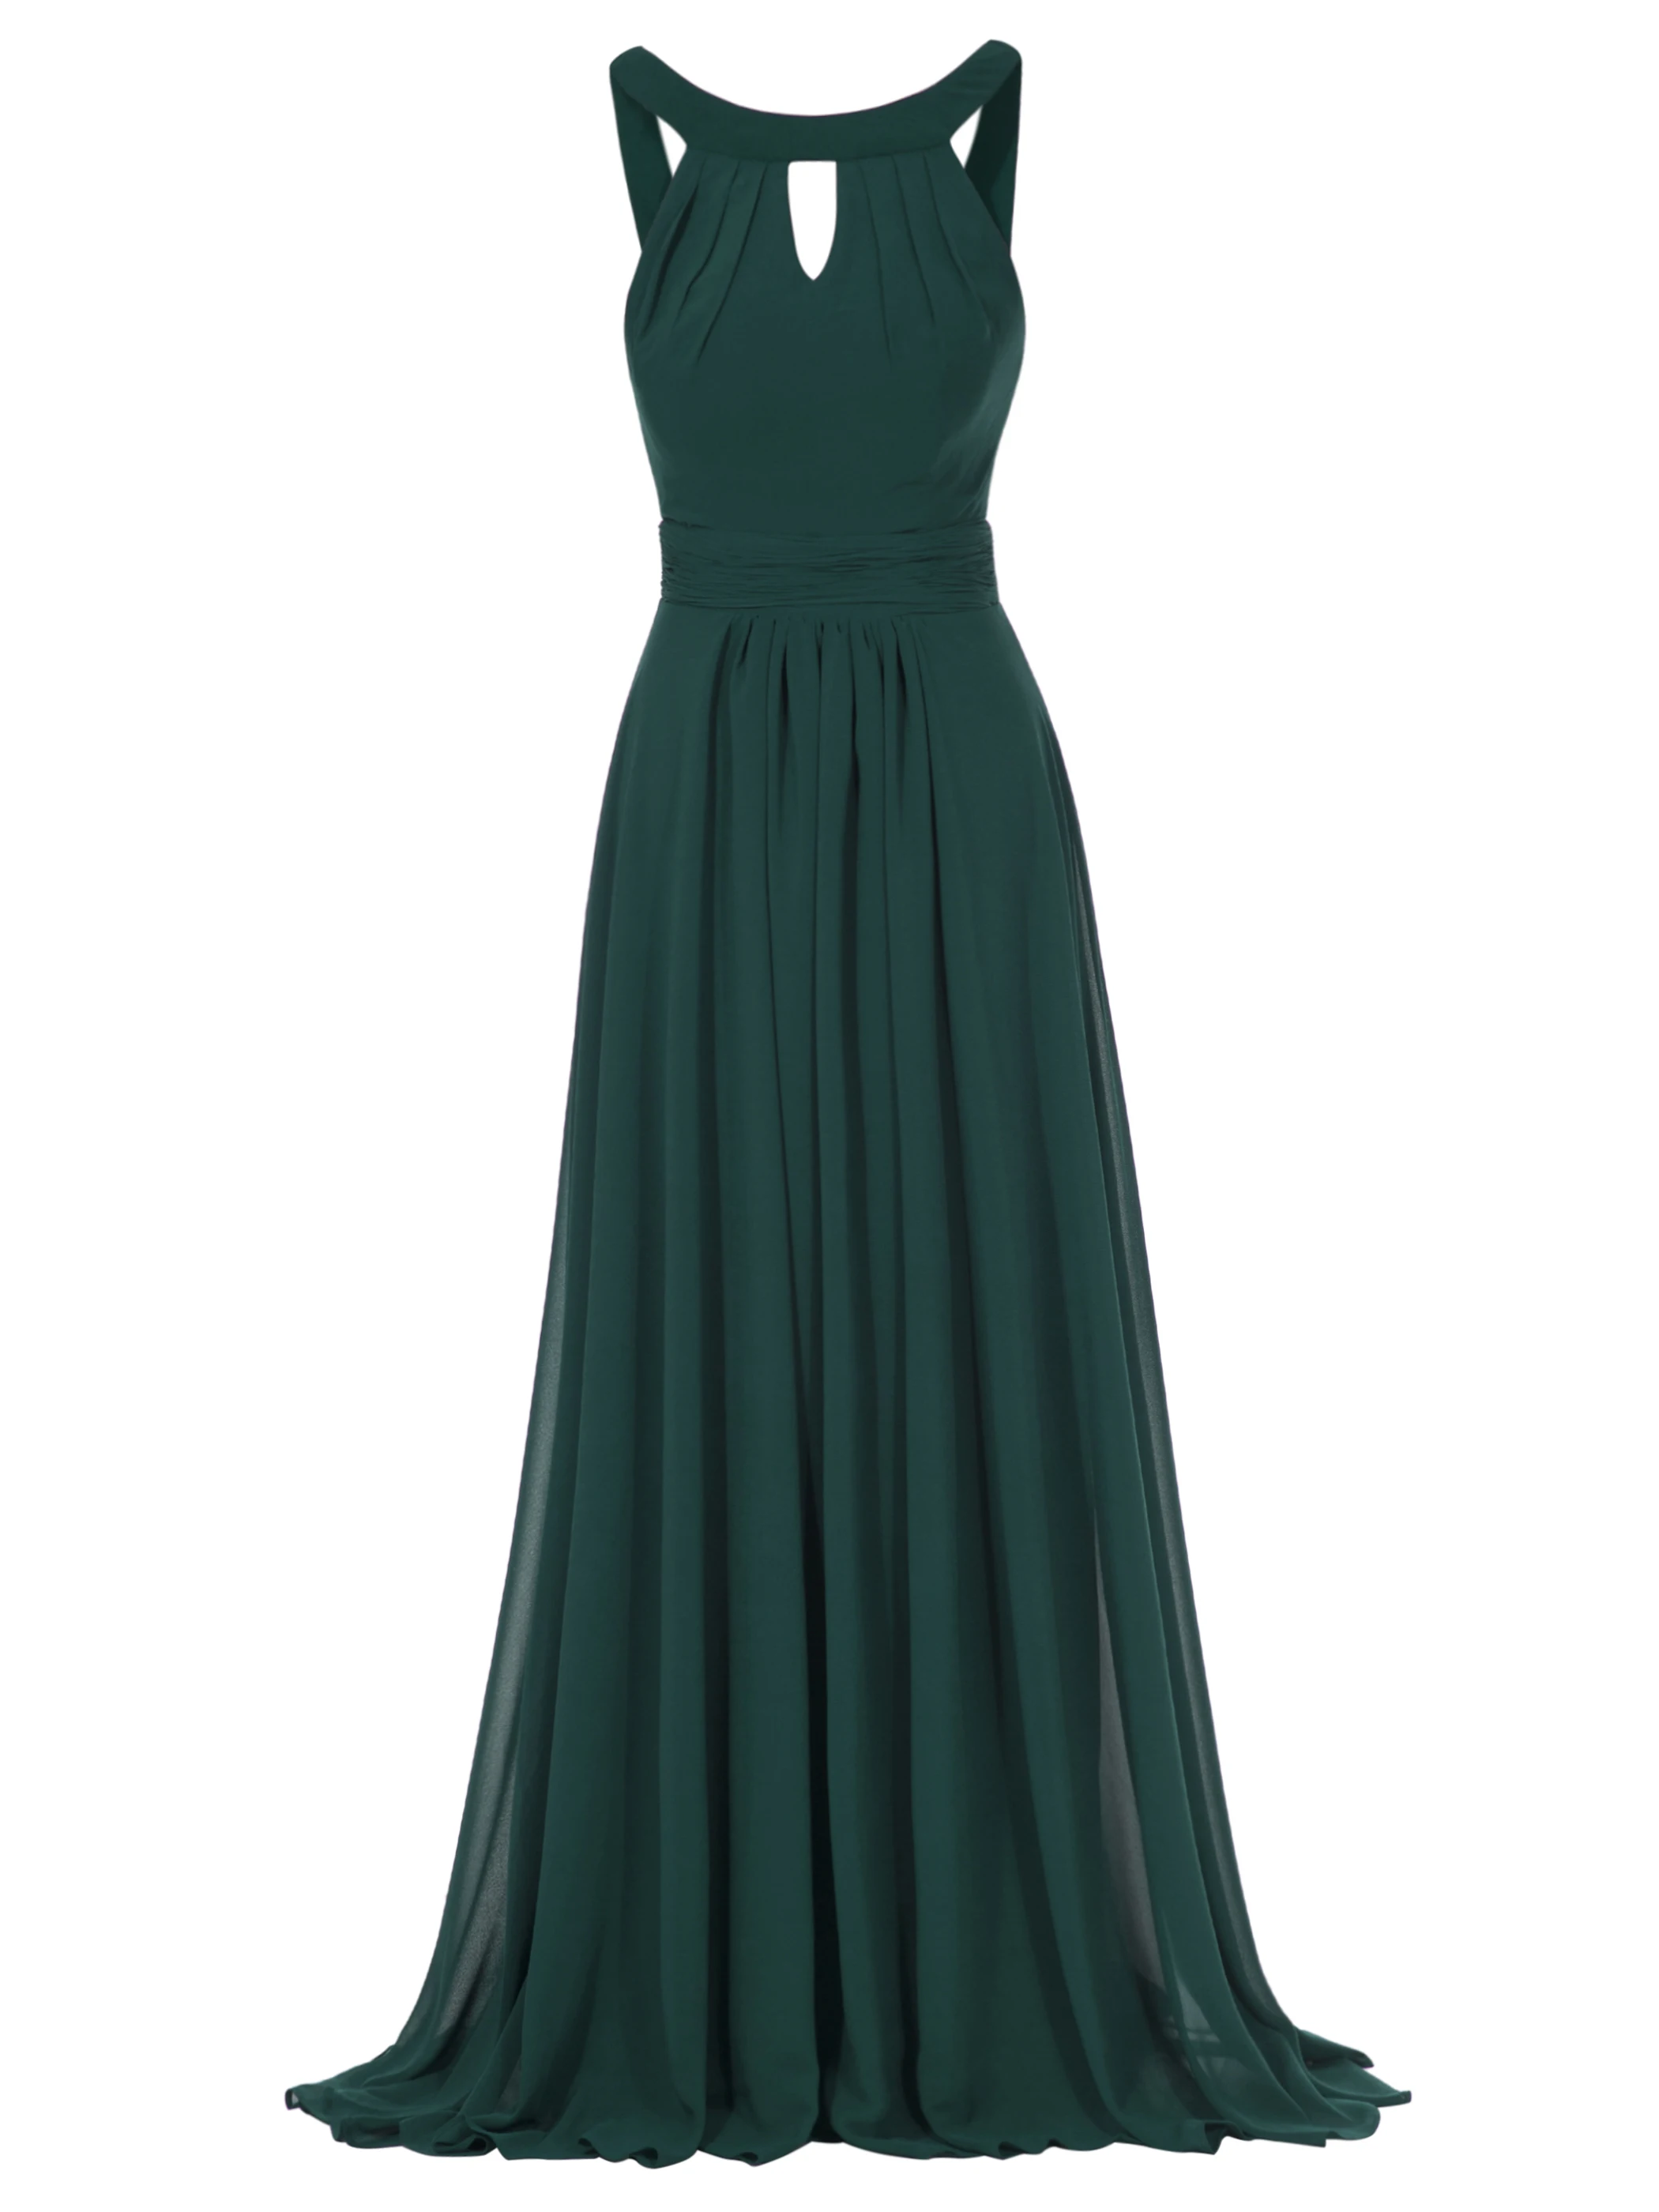 Dresssv вечернее платье, шифоновое красное платье без рукавов с рюшами, длина до пола,, розовые драпированные Вечерние платья на молнии, длинное вечернее платье - Цвет: Dark Green